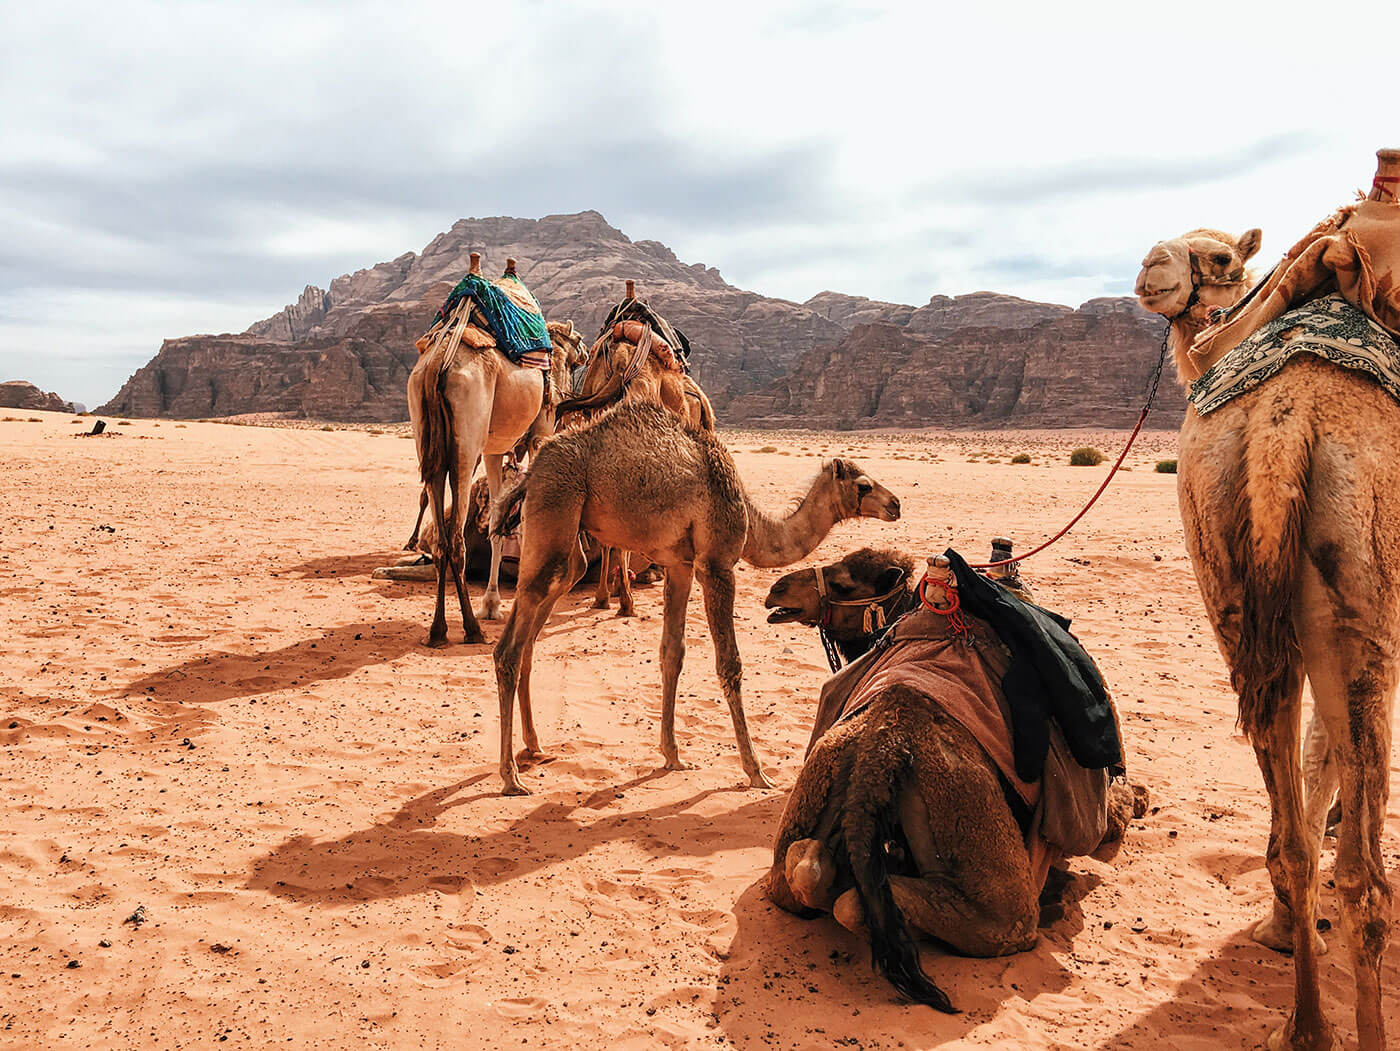 Camel camp in Wadi Rum, Jordan